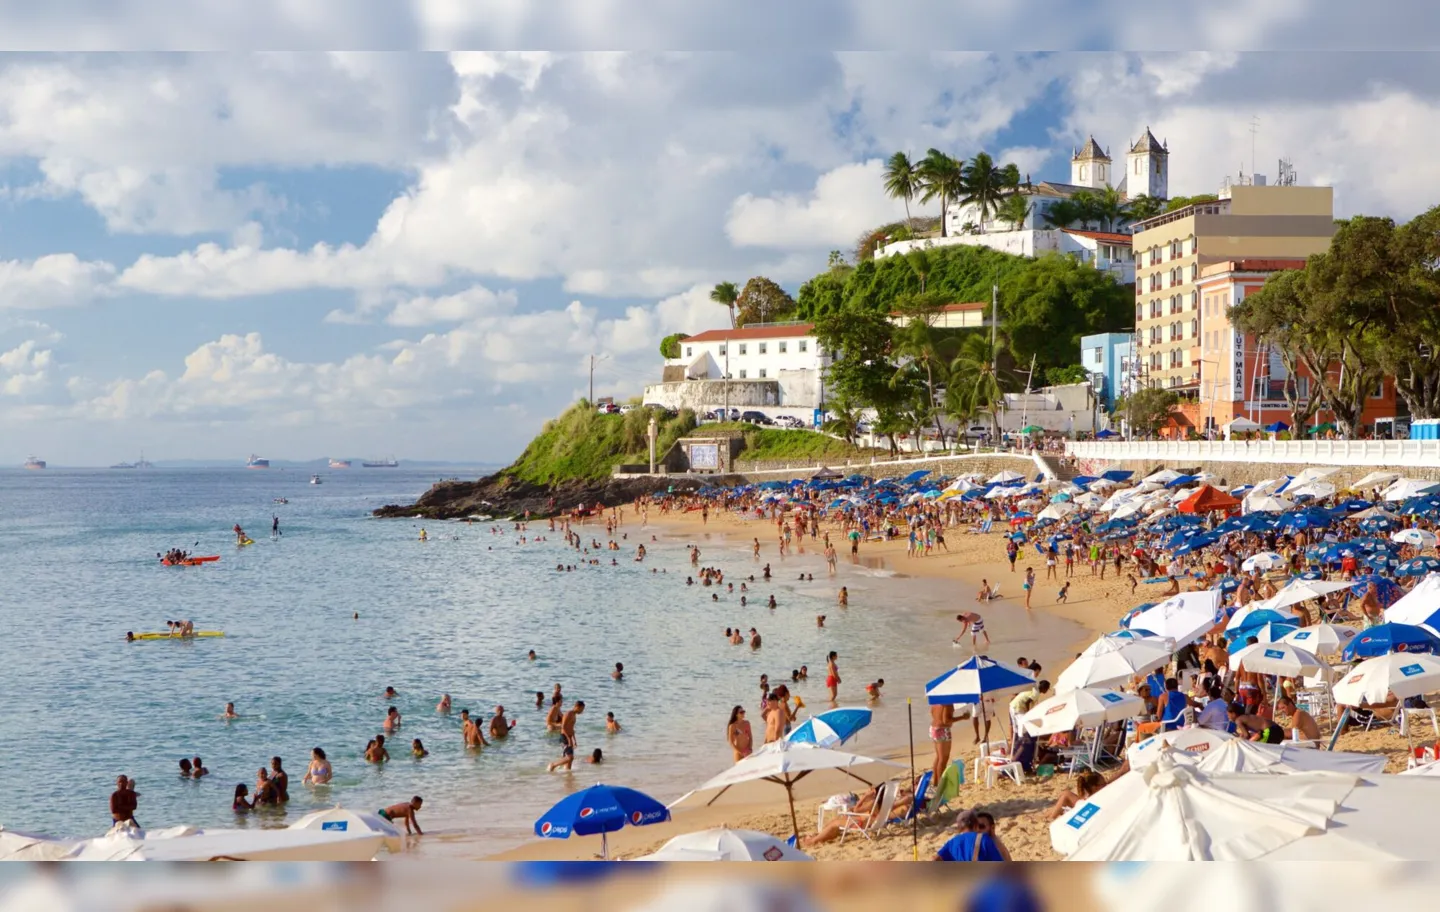 Praia do Porto da Barra costuma ter numeroso público aos fins de semana